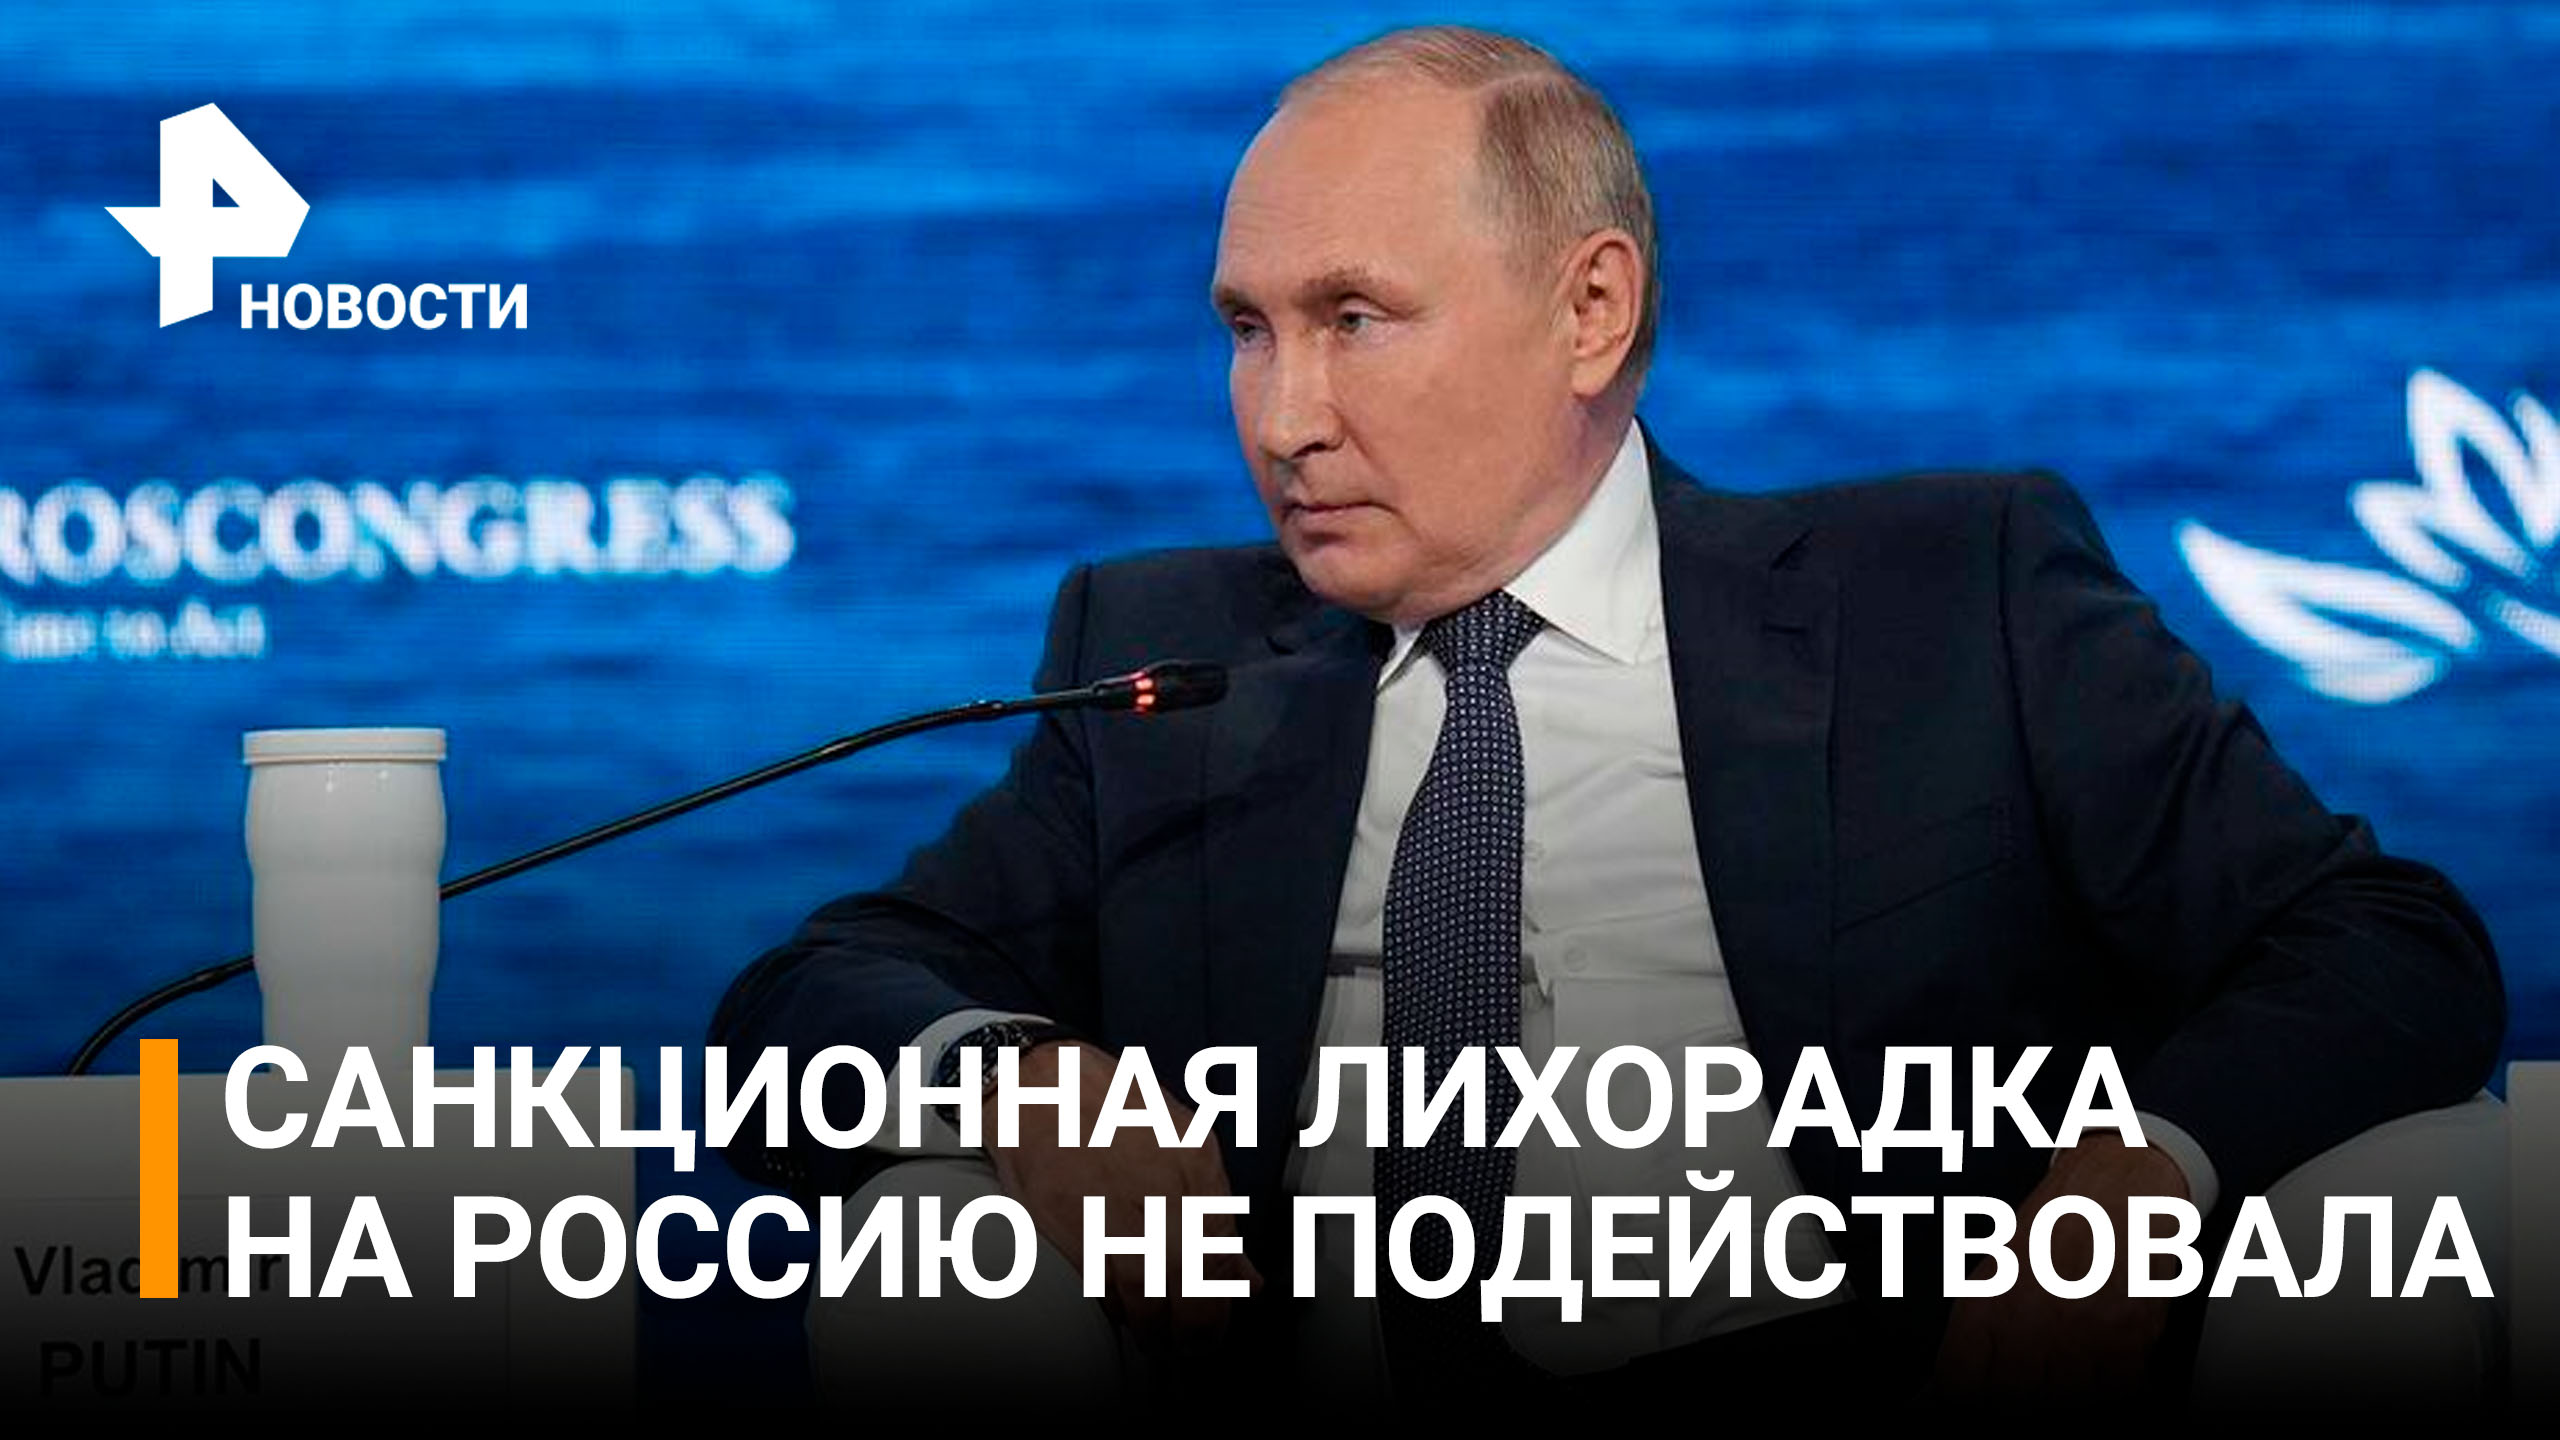 "Россия фактически выиграла": реакция Запада на выступление Путина / РЕН Новости